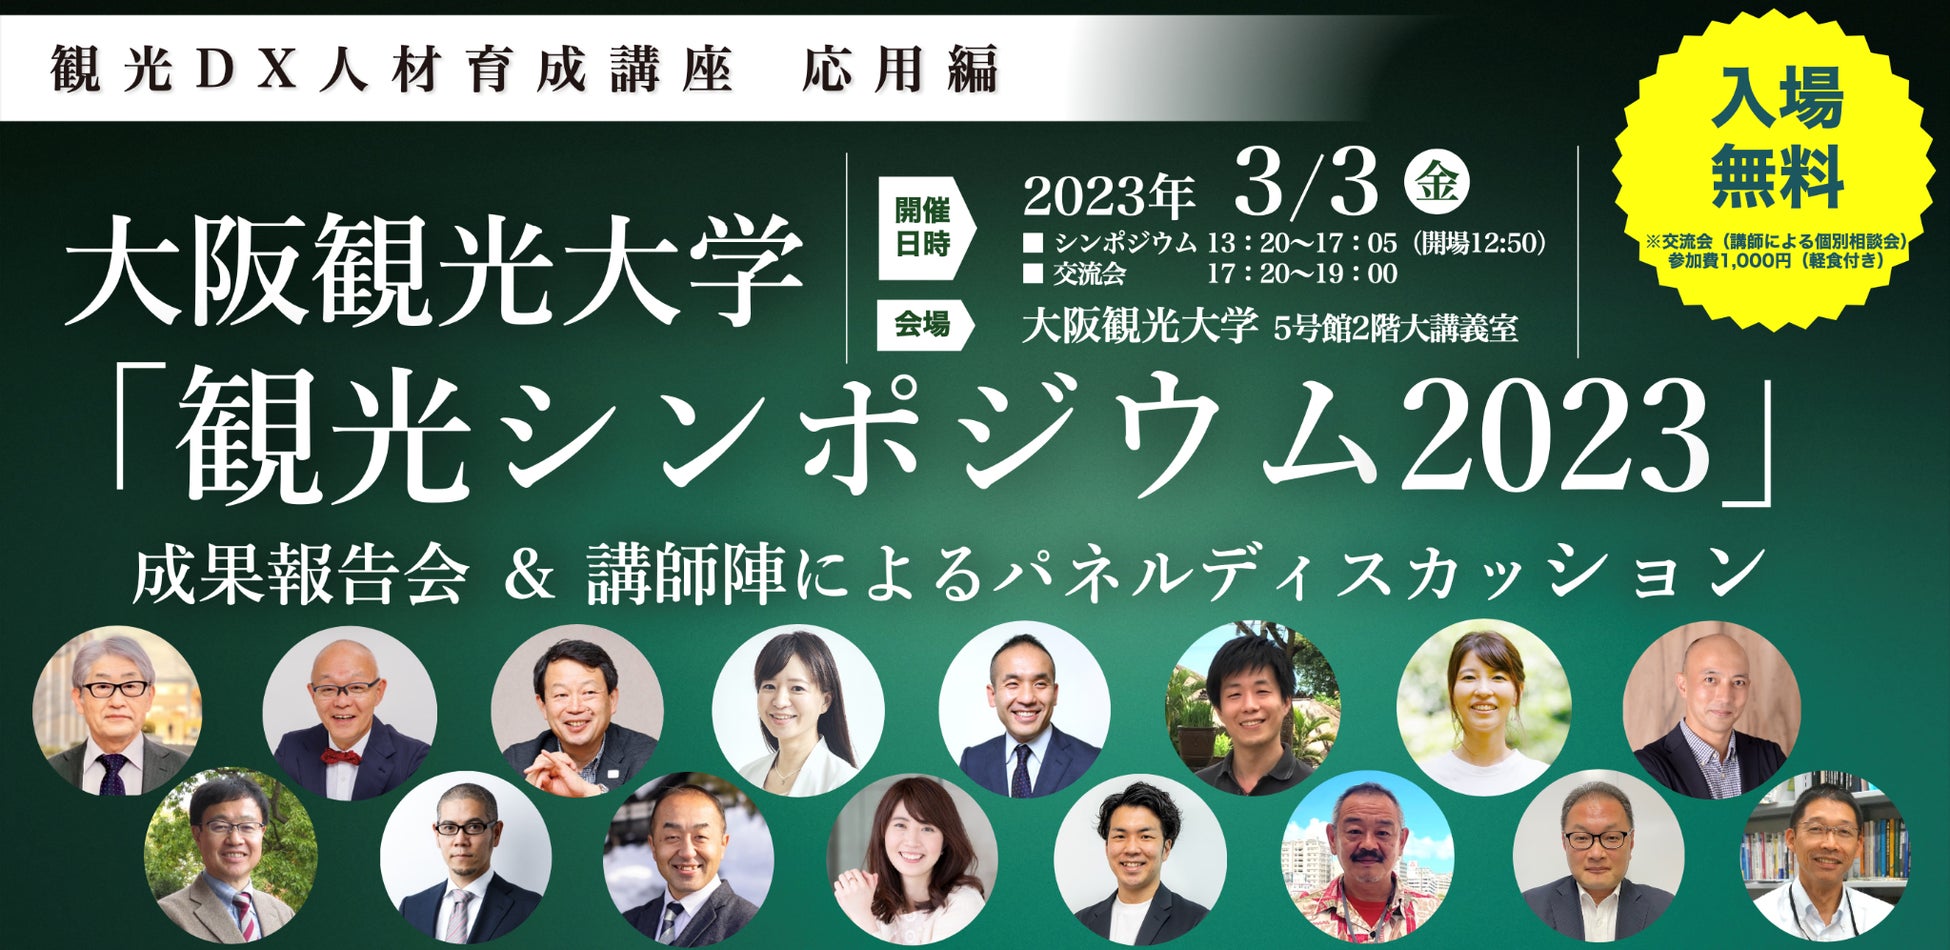 3月25日(土) ガーデンデザイナーの吉谷桂子氏による特別講演会を開催します。